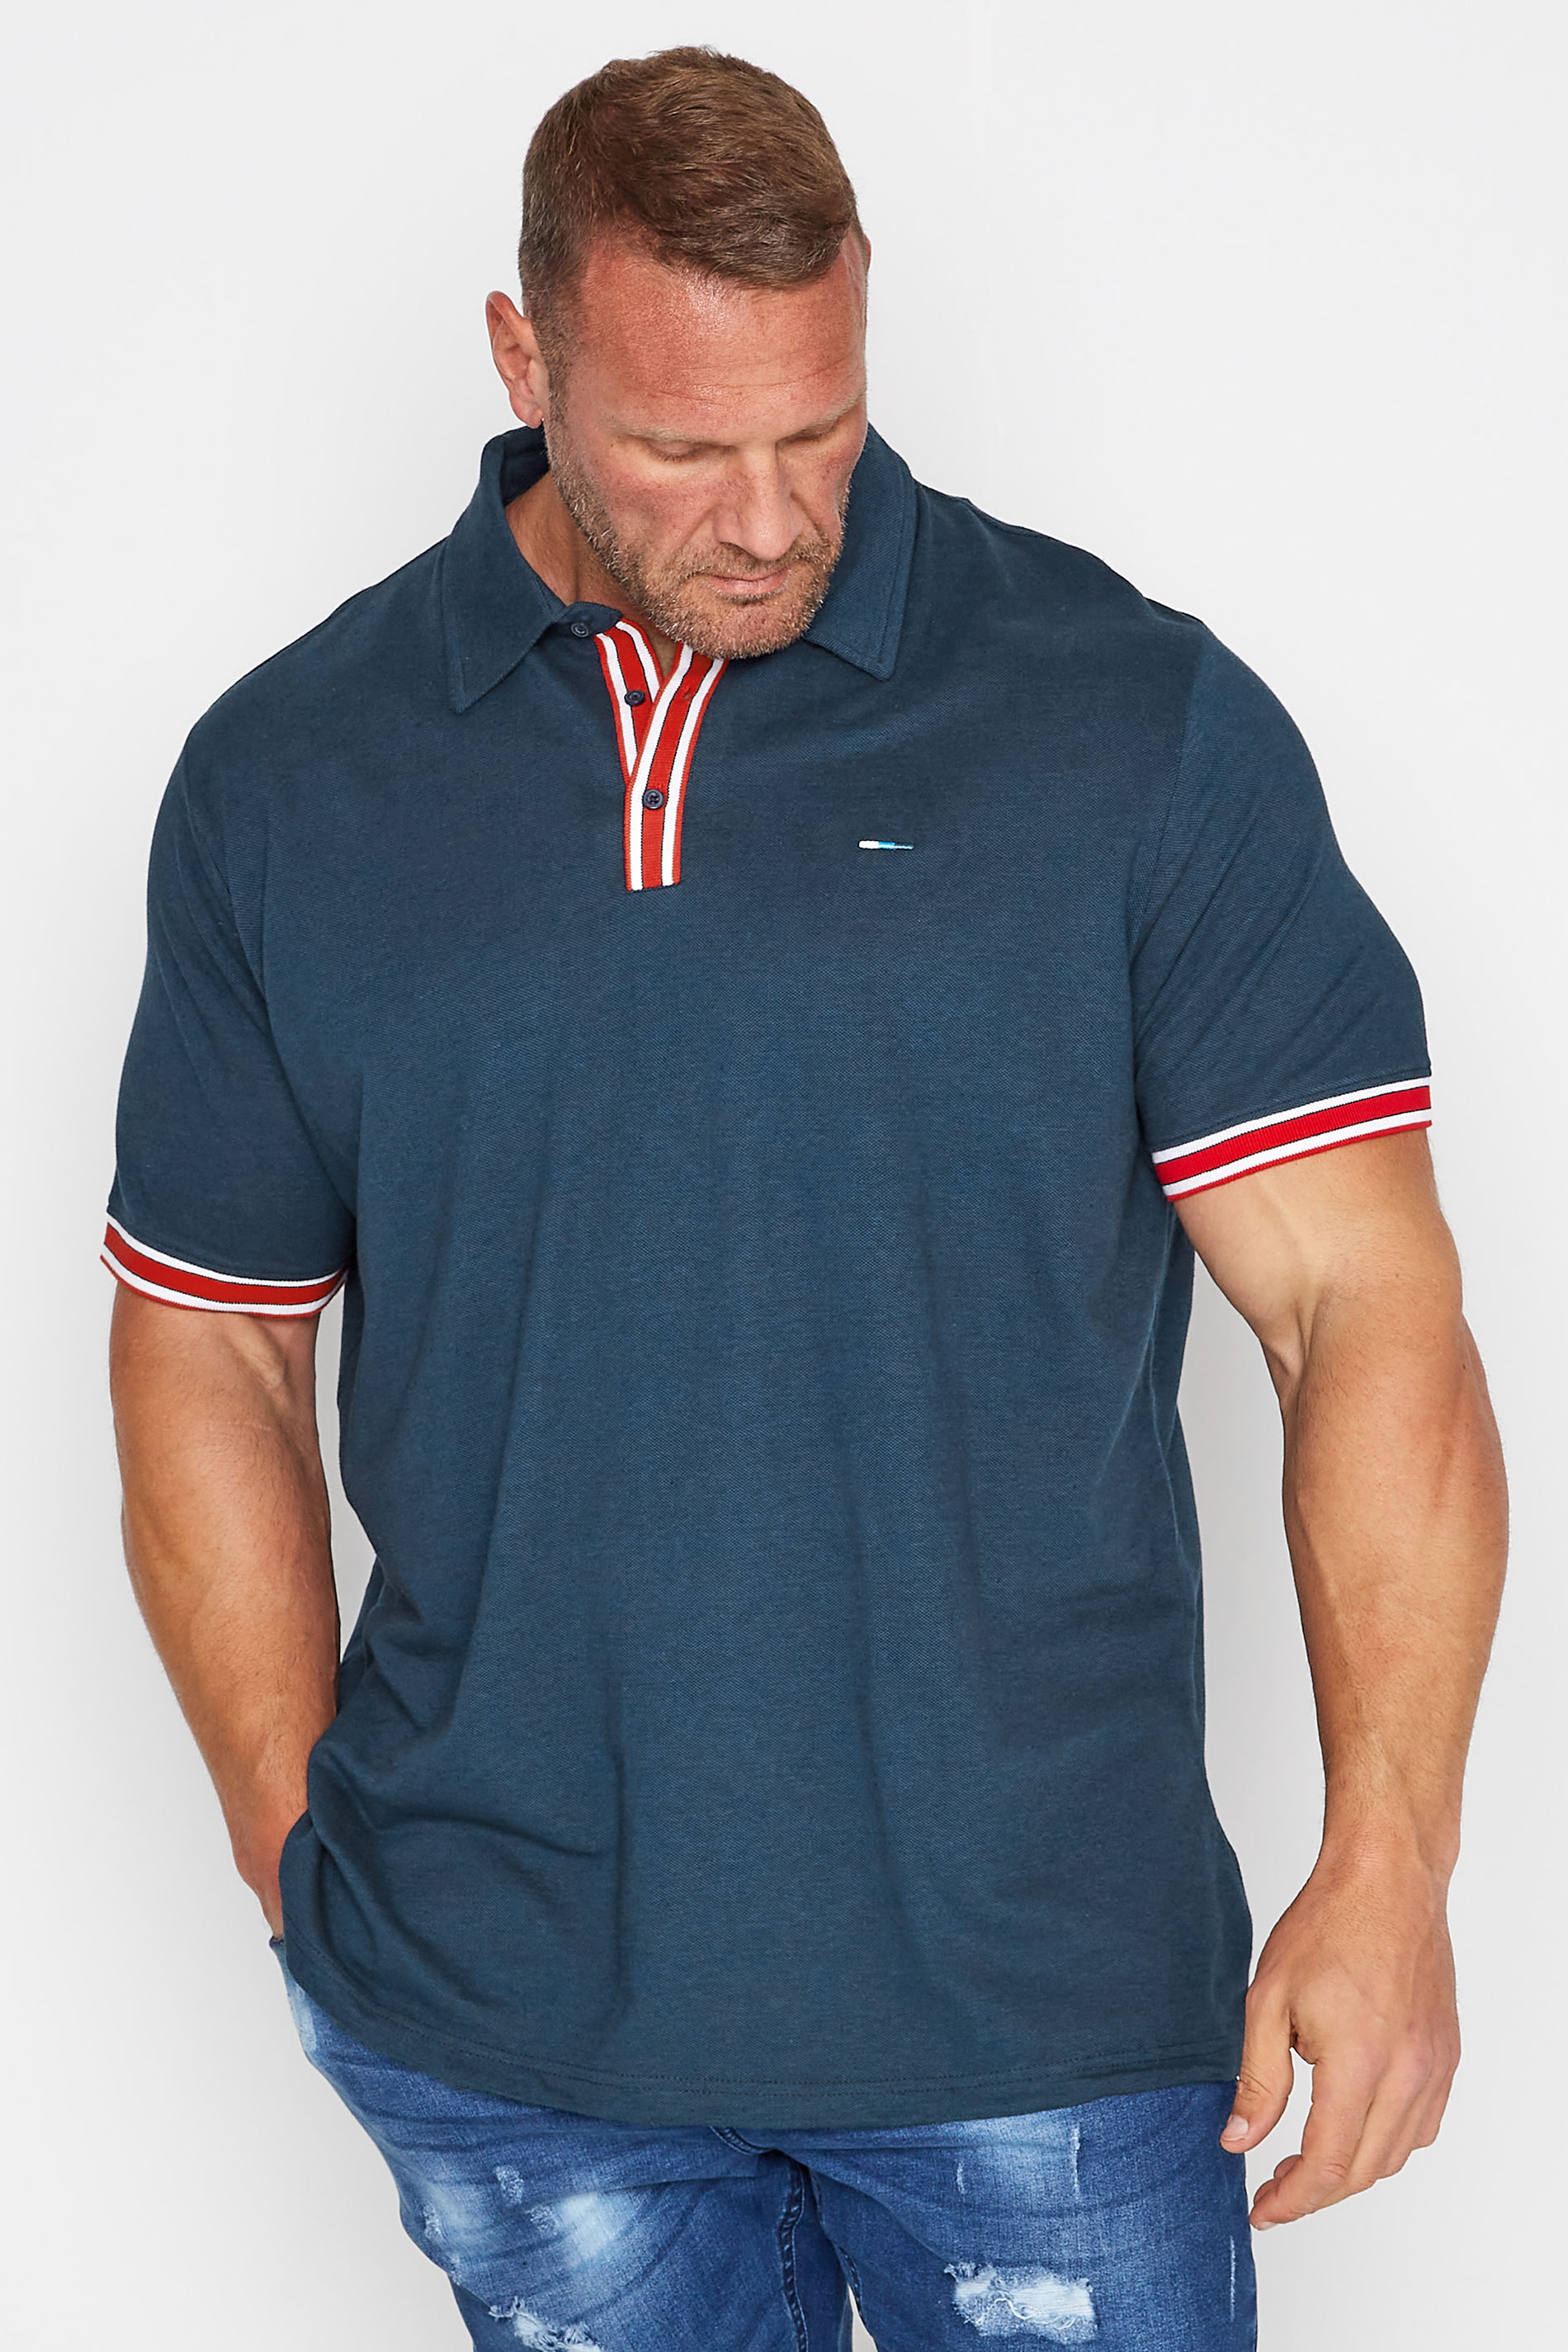 BadRhino Big & Tall Navy Blue Contrast Stripe Placket Polo Shirt | BadRhino 1